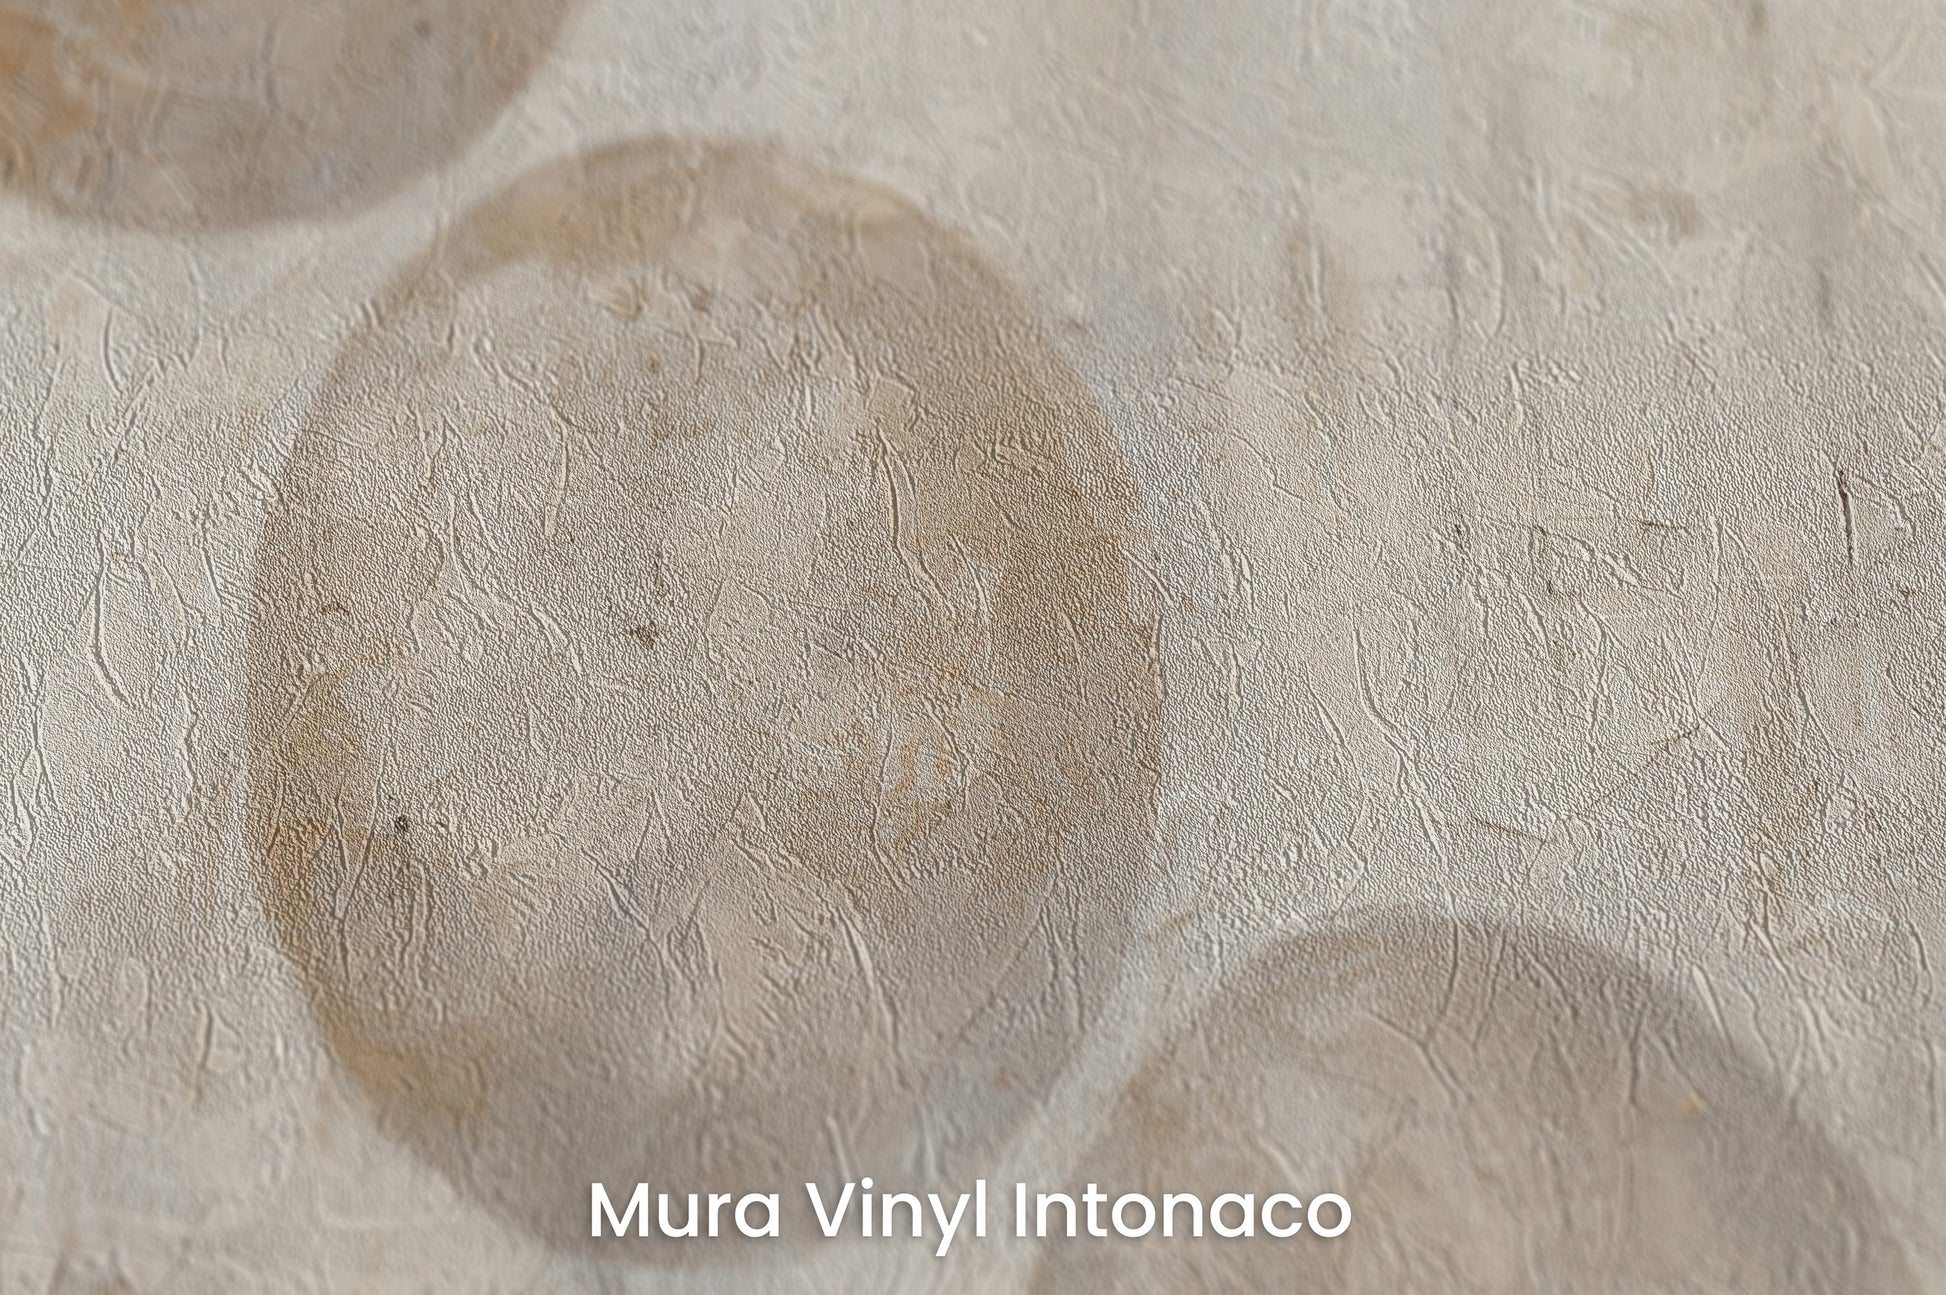 Zbliżenie na artystyczną fototapetę o nazwie SPHERICAL HARMONY ABSTRACT na podłożu Mura Vinyl Intonaco - struktura tartego tynku.